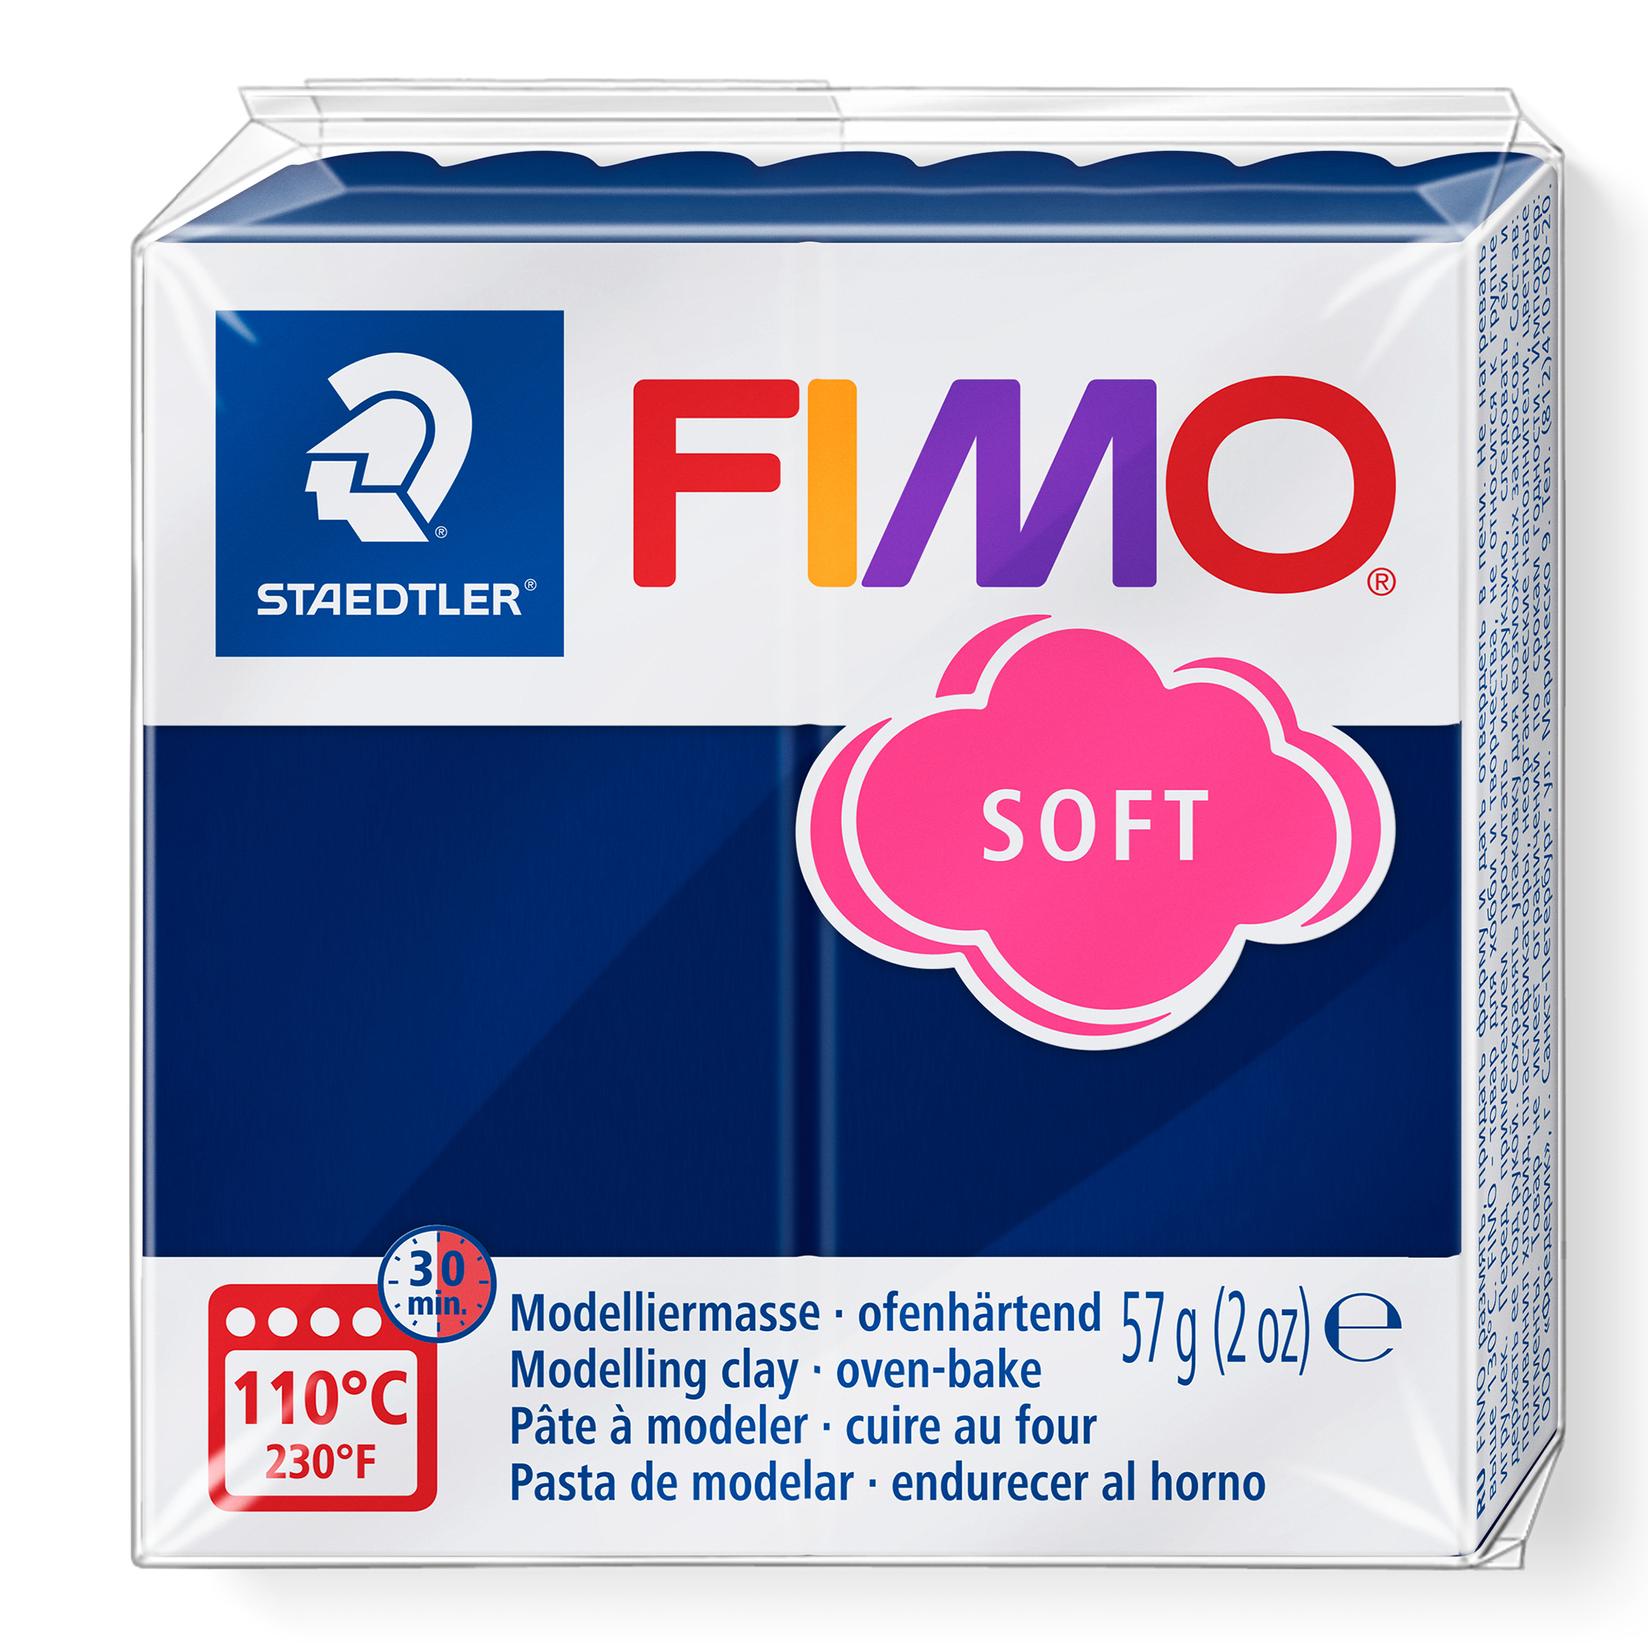 FIMO polimerna glina mekana vindsor plava